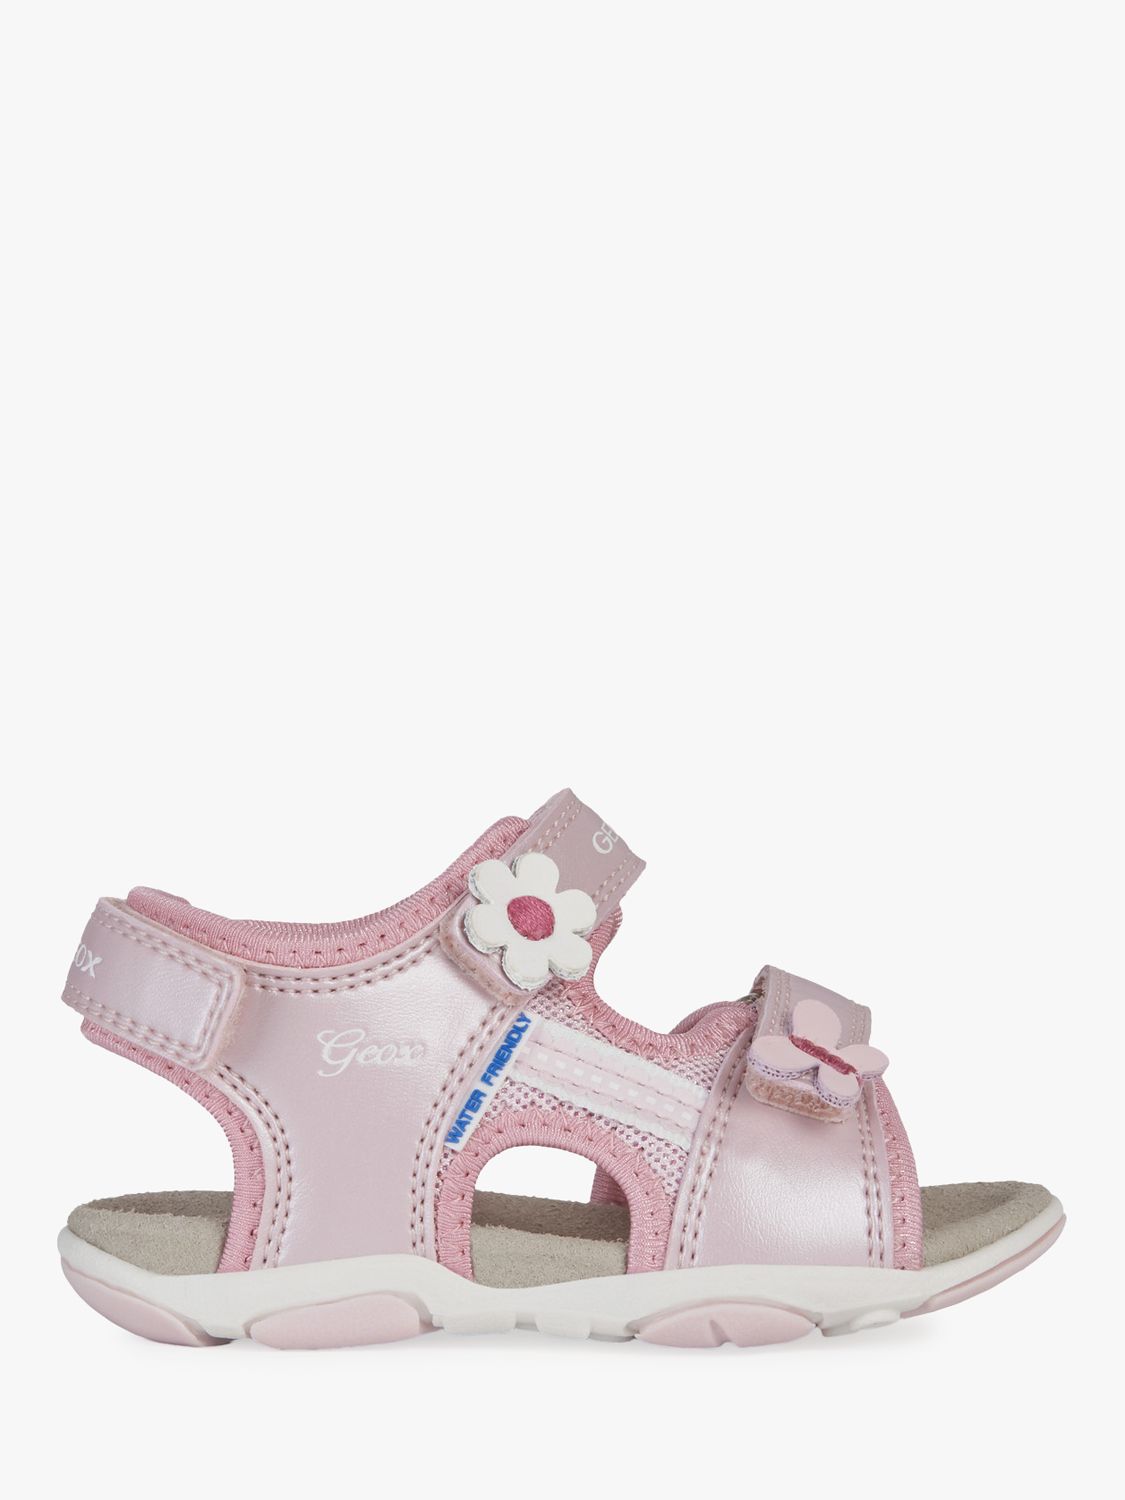 Geox Children's Agasim Pre-Walker Sandals, Pink